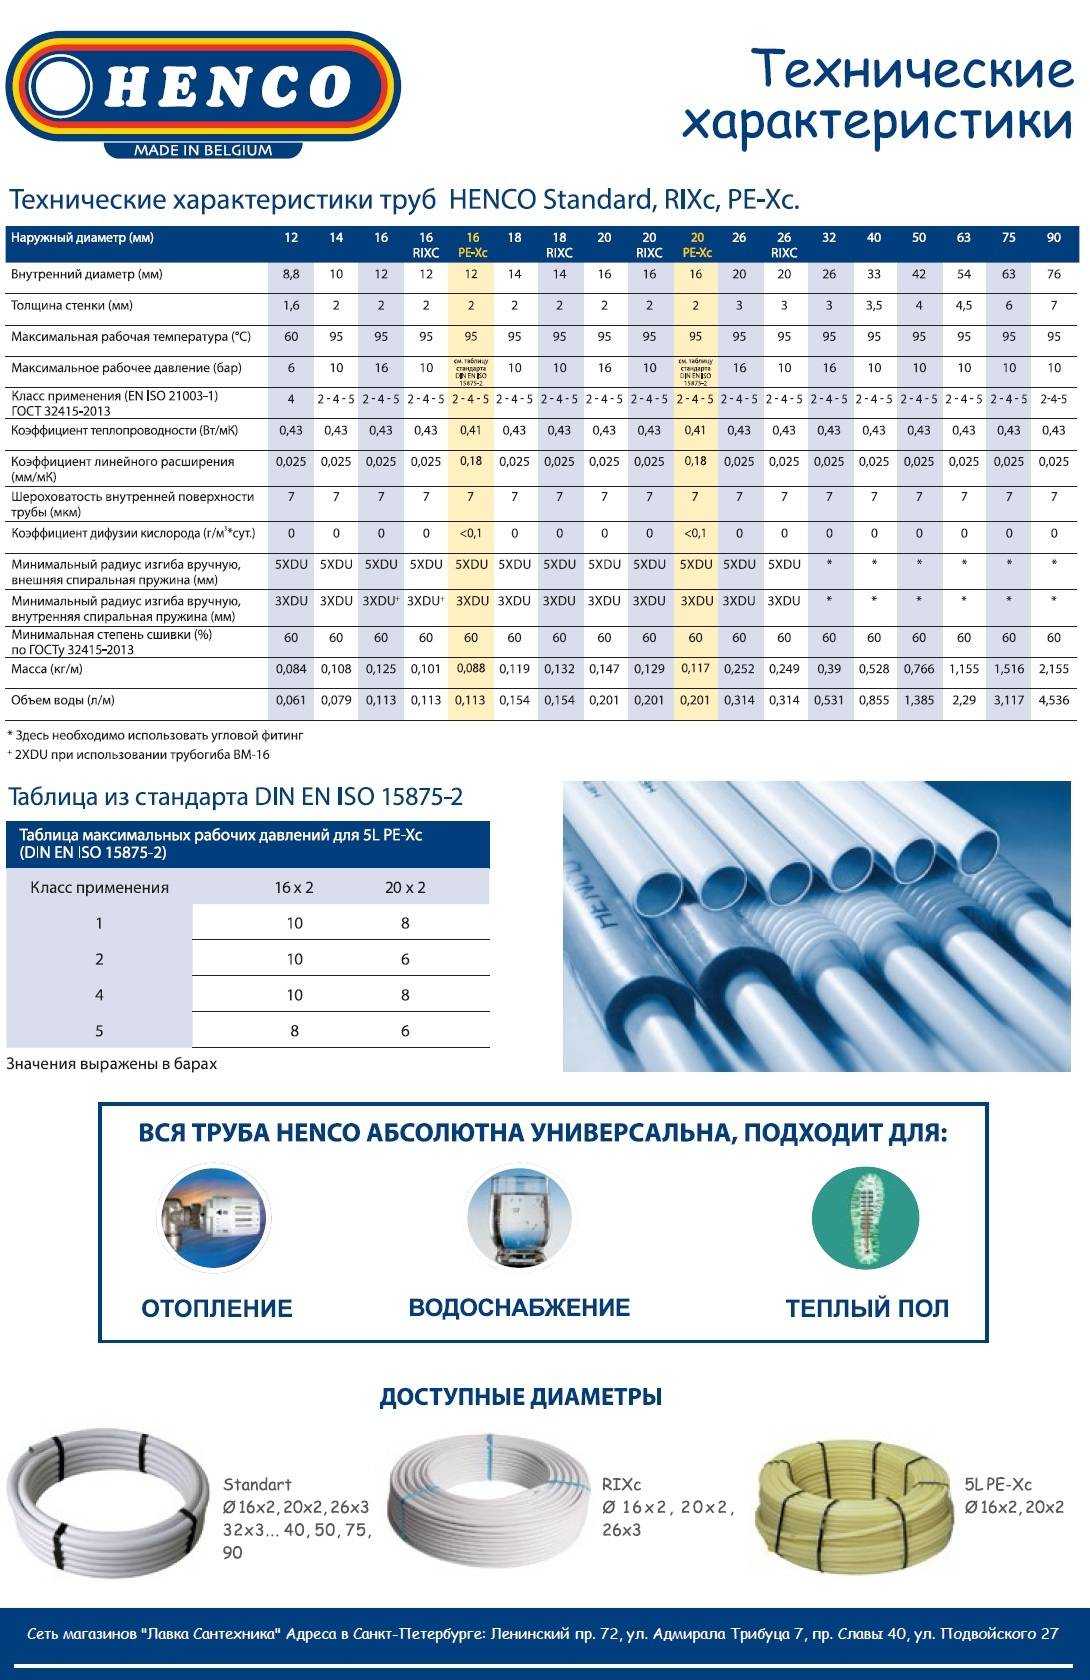 Металлопластиковые трубы: строение, характеристики и сфера применения